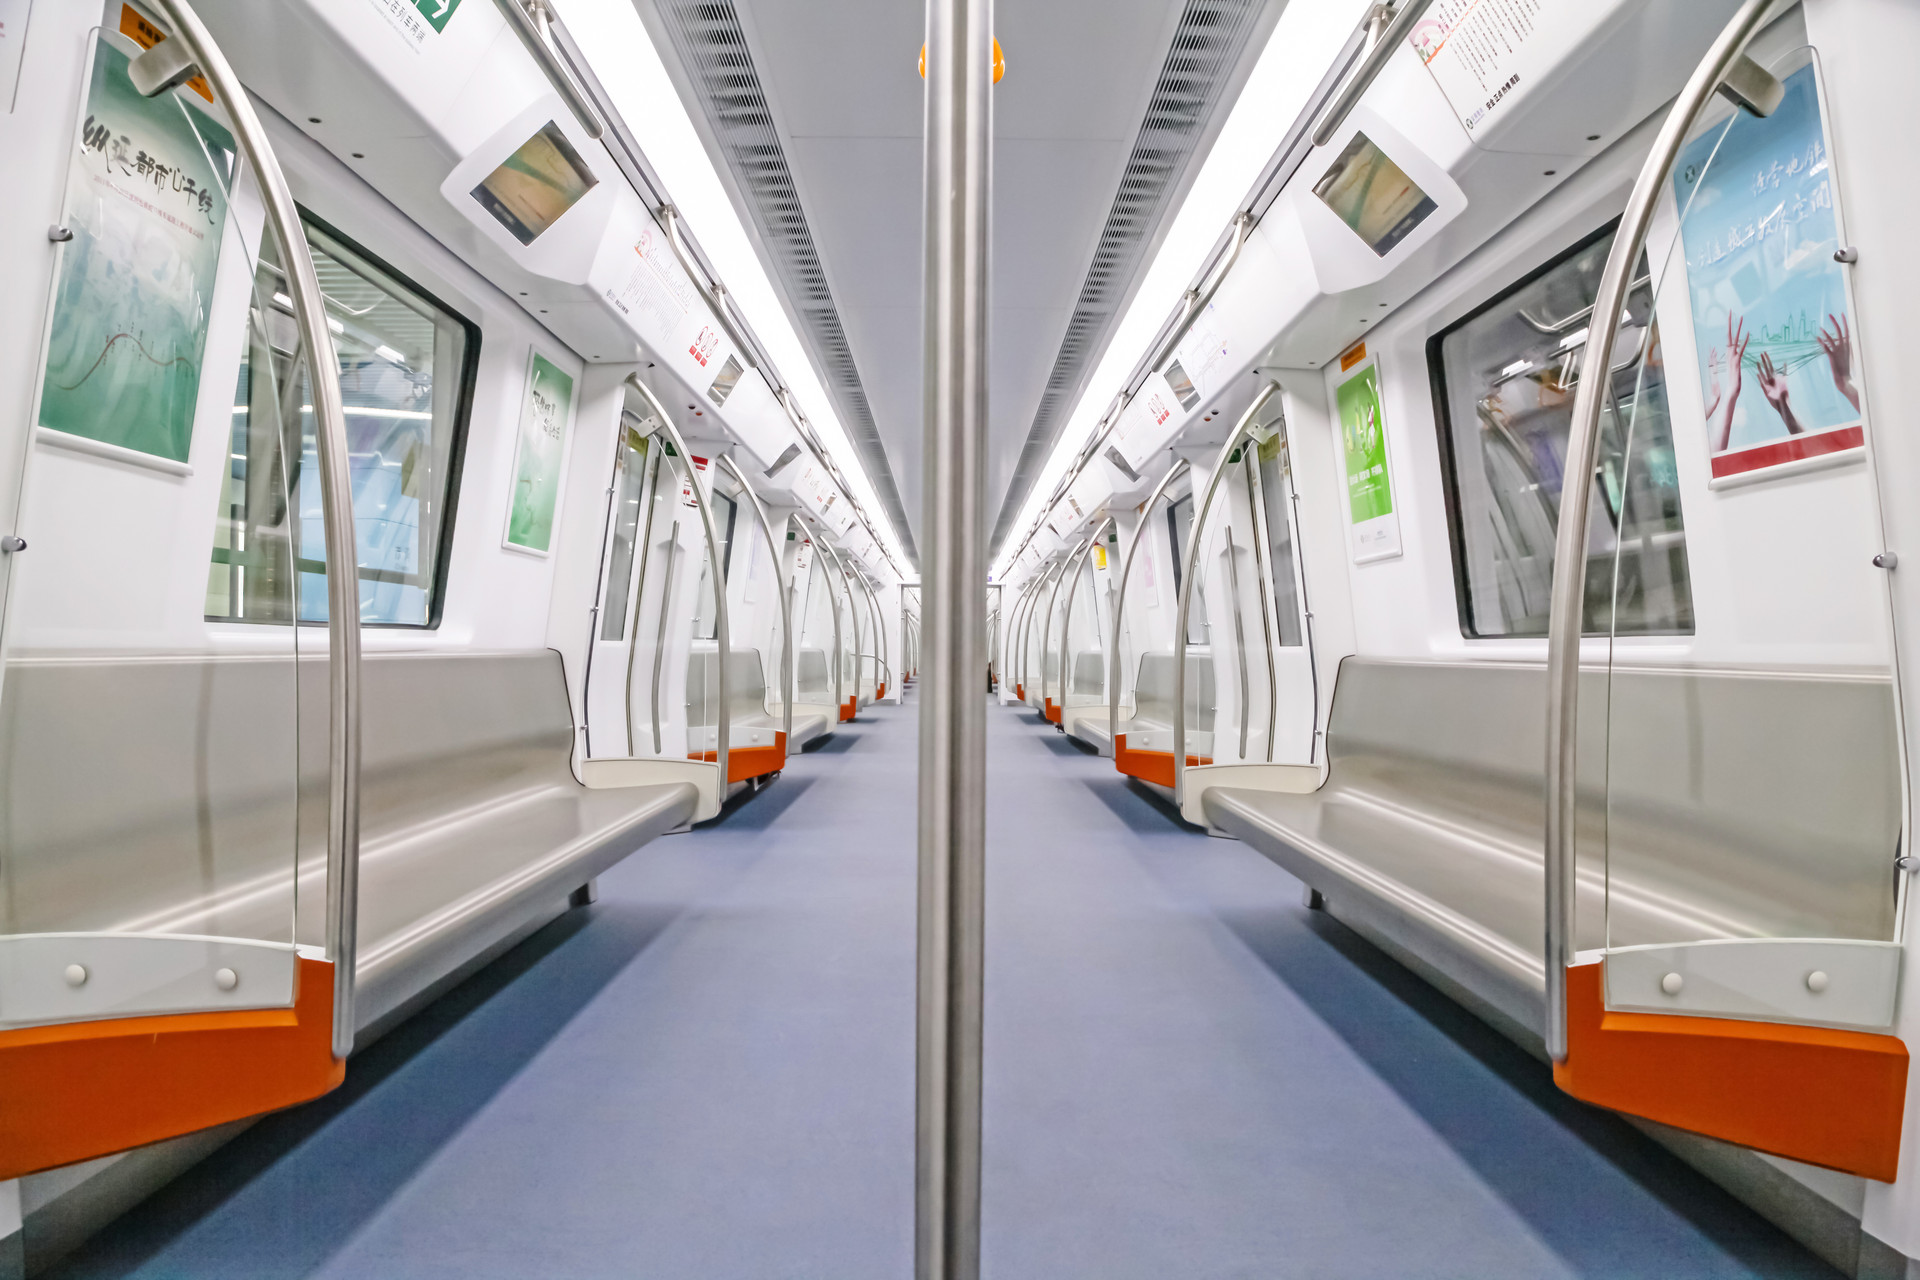 深圳轨道四期调整工程站点命名规划方案发布